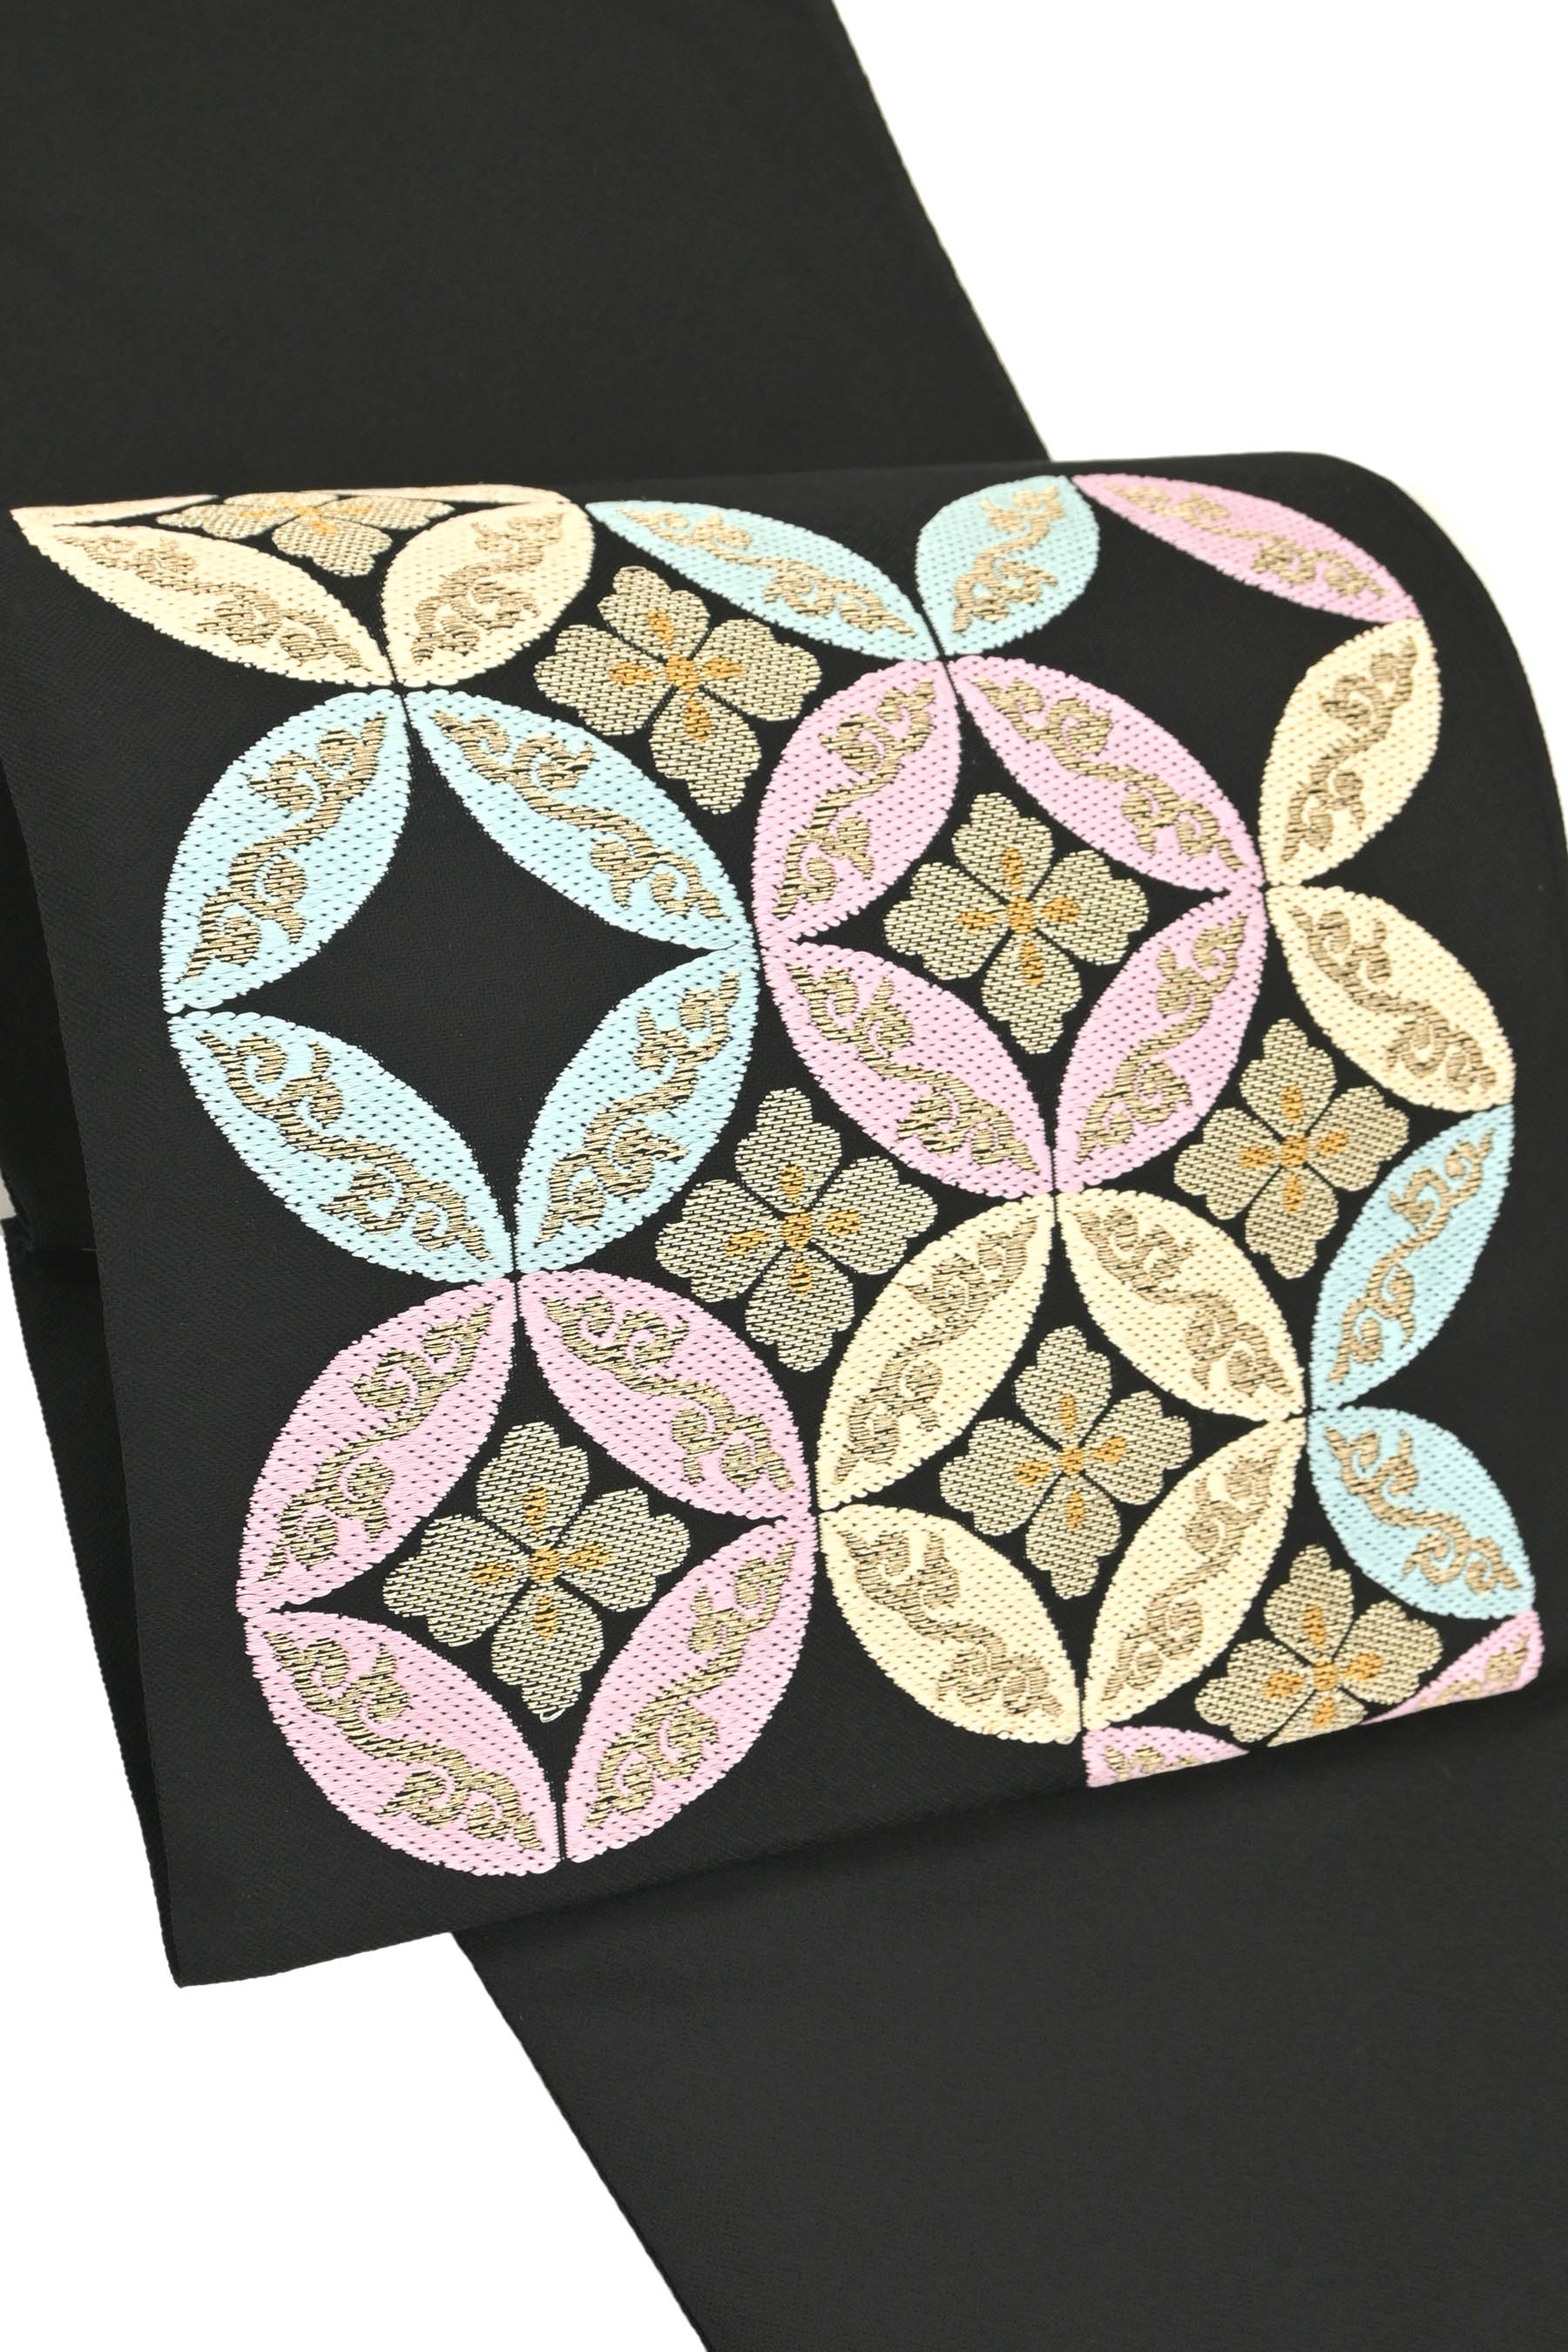 洛風林 唐織 名古屋帯 工芸帯地 洛風林刺繍に見える素晴らしい織 - 着物